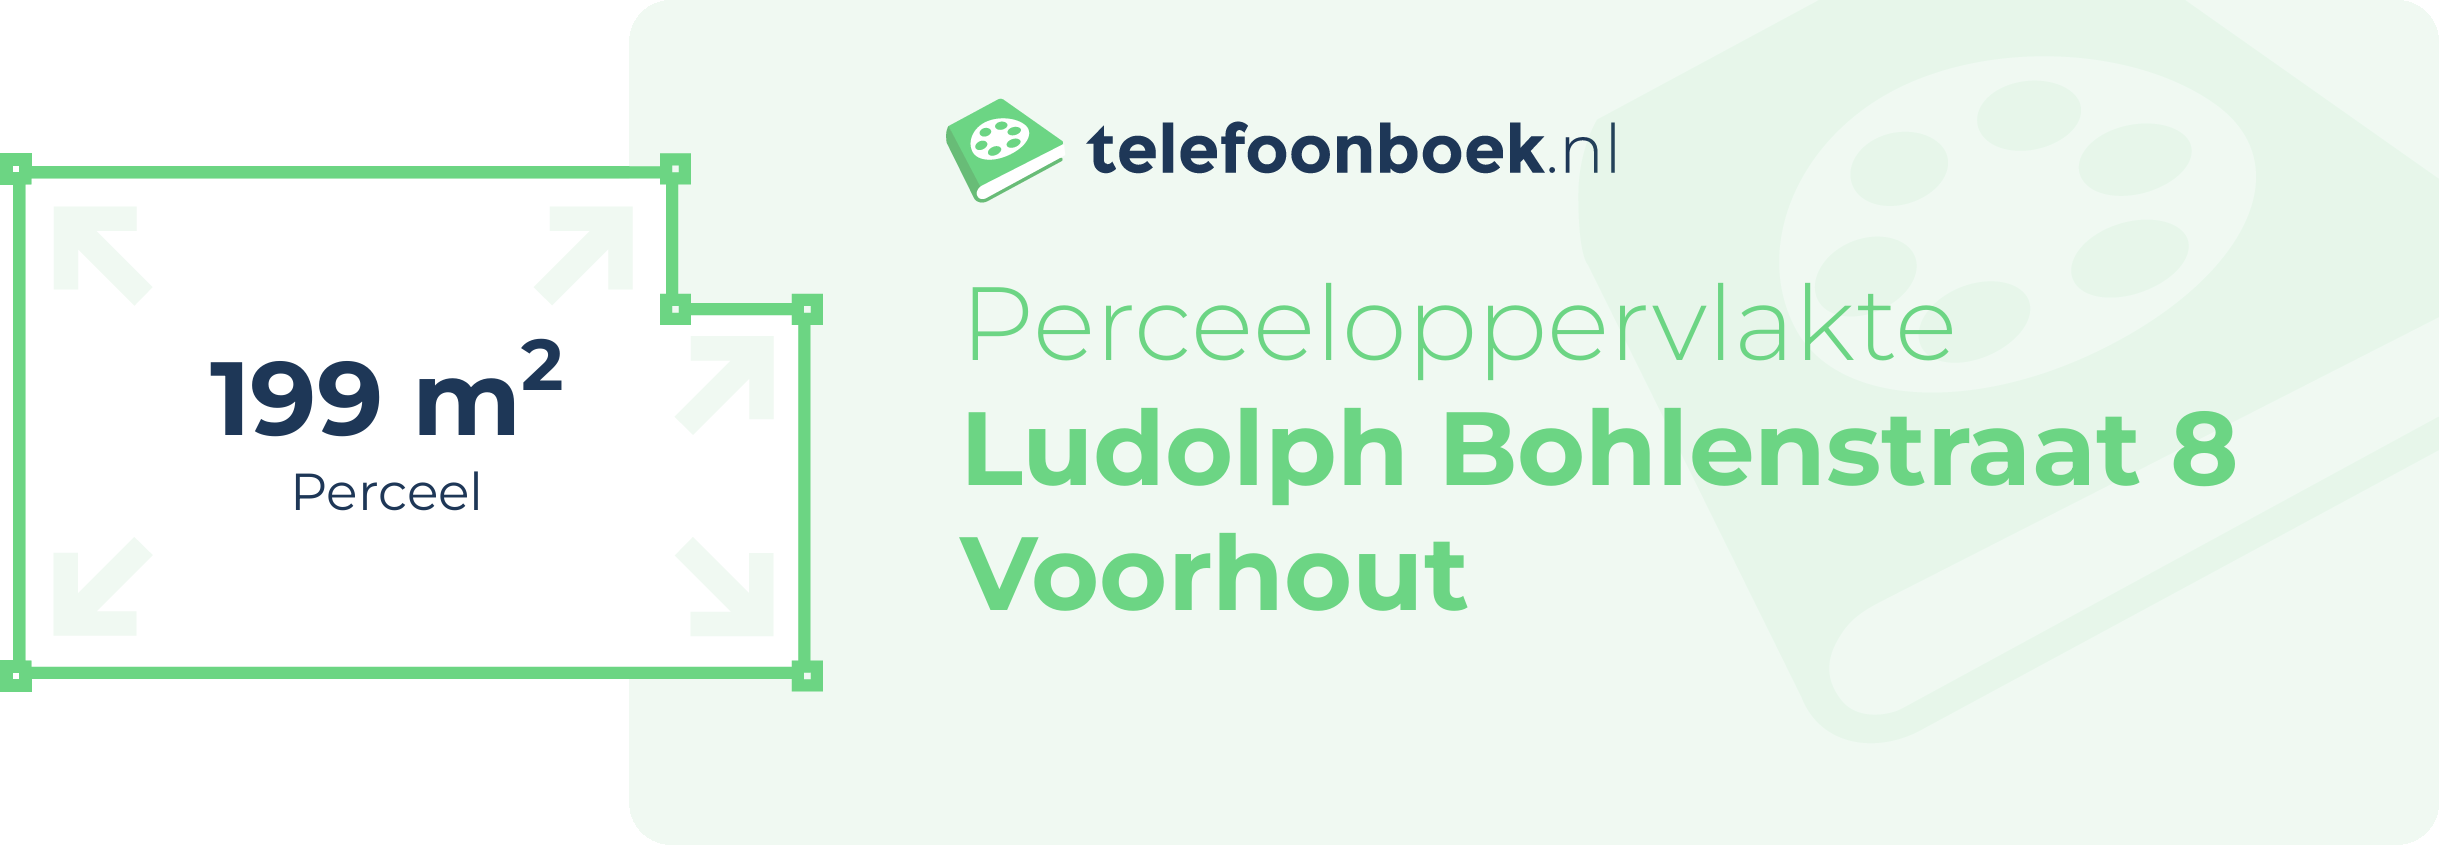 Perceeloppervlakte Ludolph Bohlenstraat 8 Voorhout